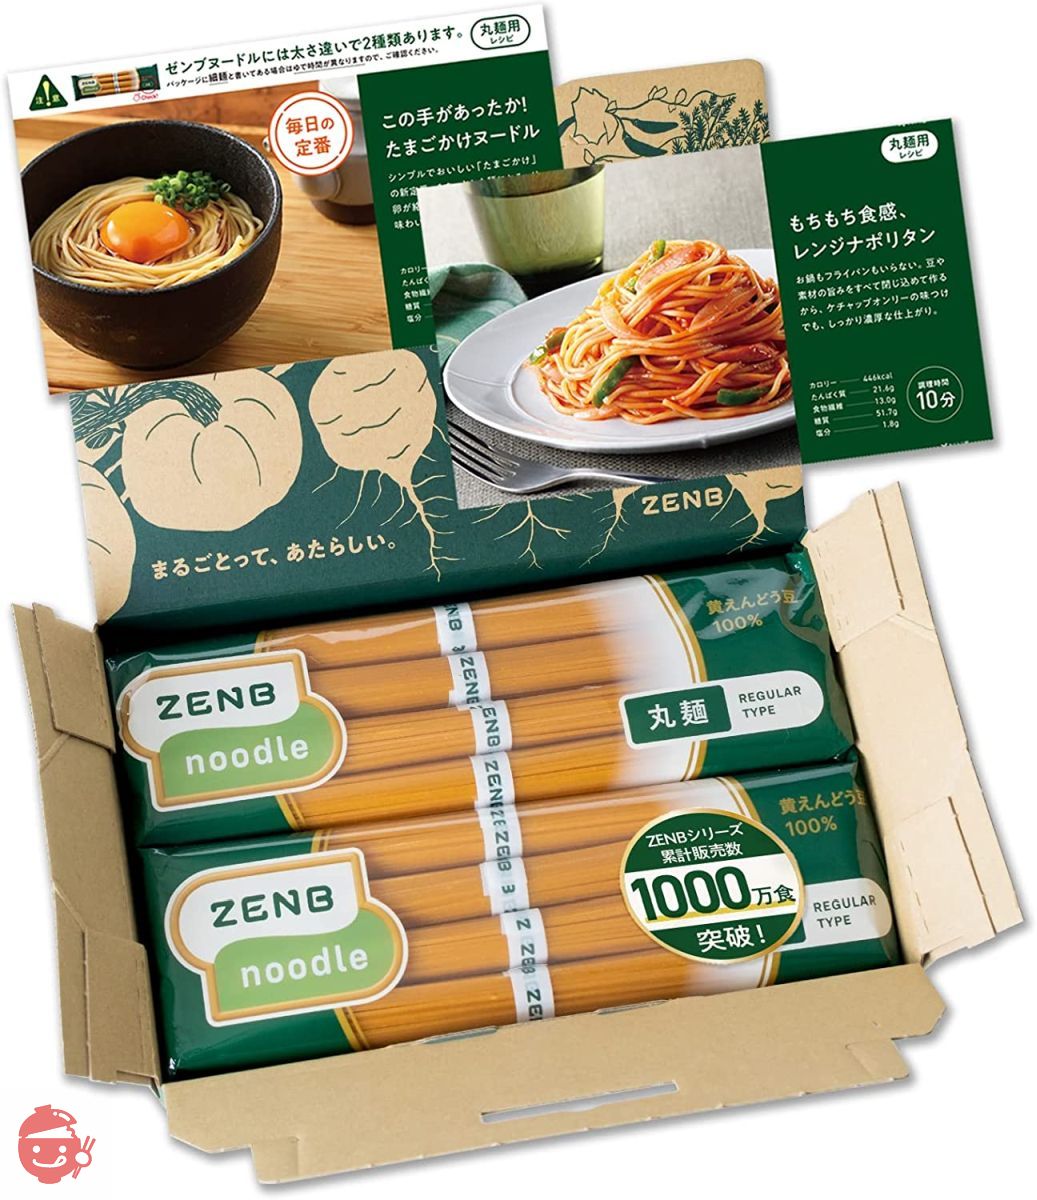 ZENB noodle 丸麺 RAMEN 醤油味 - ダイエットフード